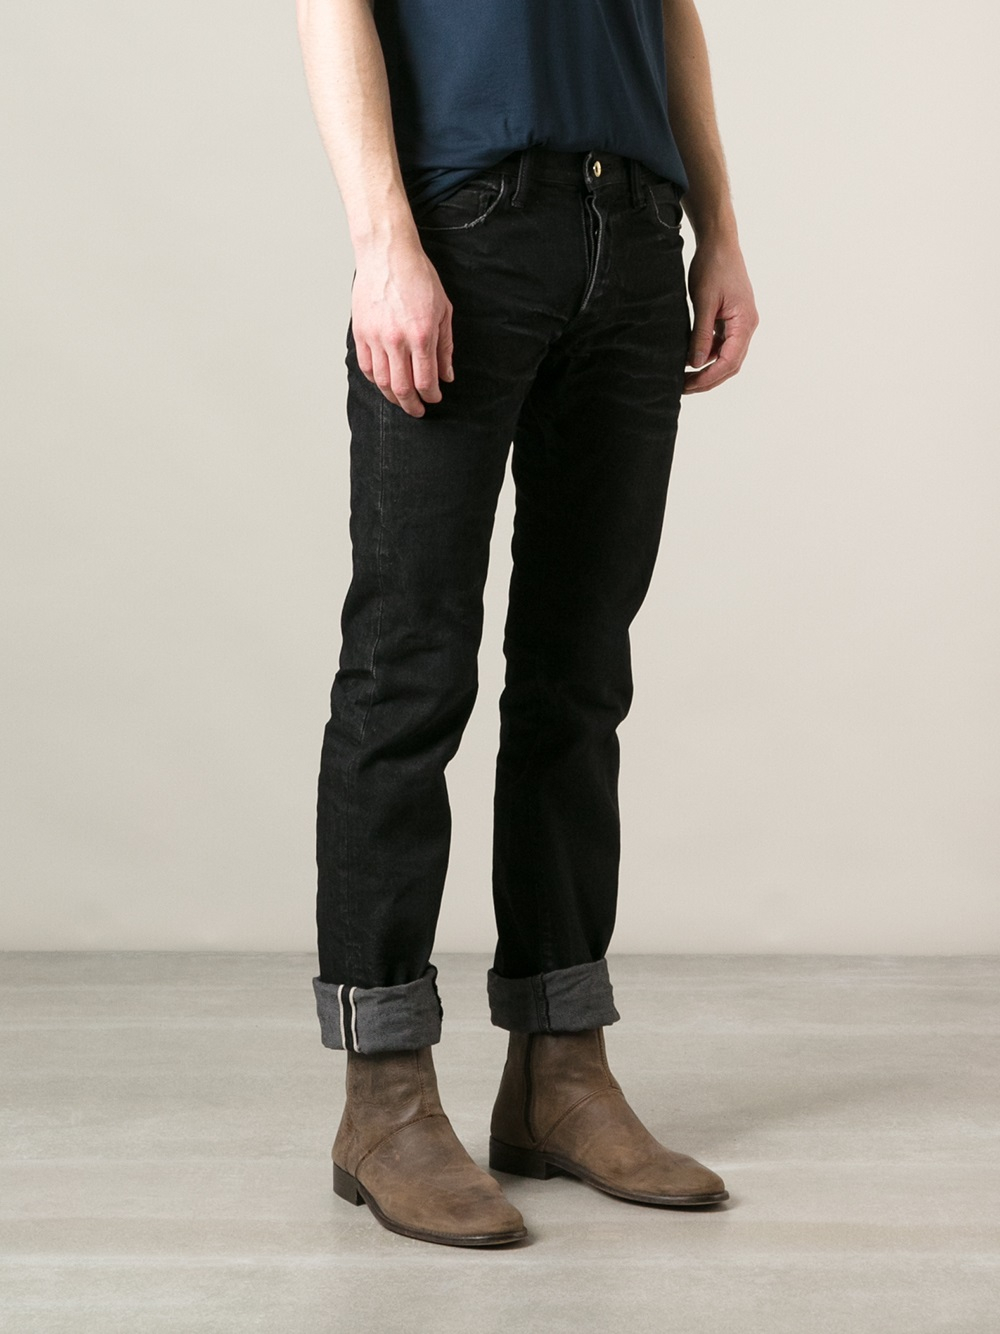 Lyst - Prps Noir Straight Leg Jeans in Black for Men